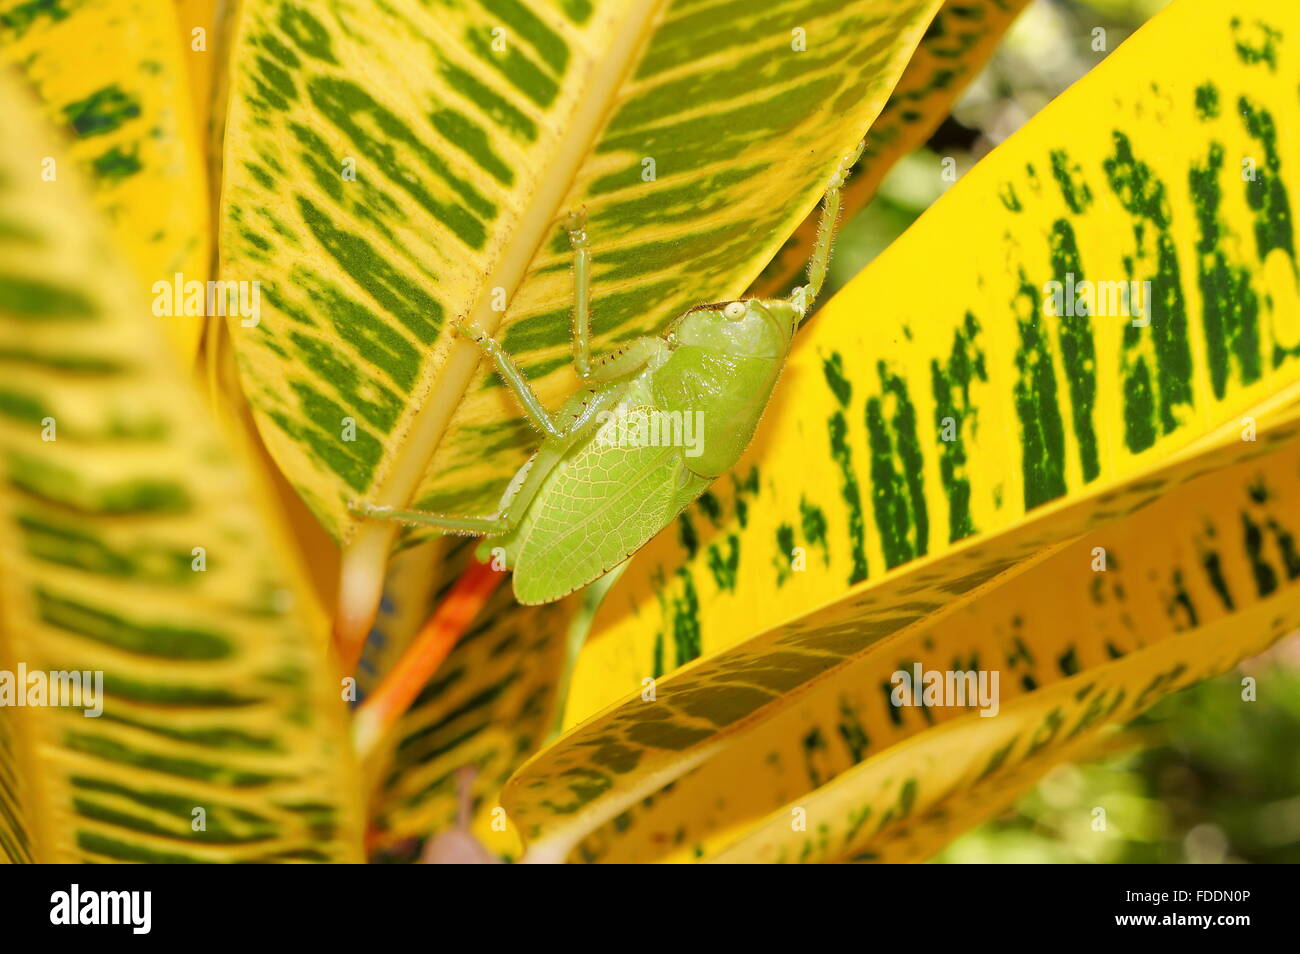 Brown-face au porteur de lance katydid, Copiphora hastata, sous croton leaf, Costa Rica Banque D'Images